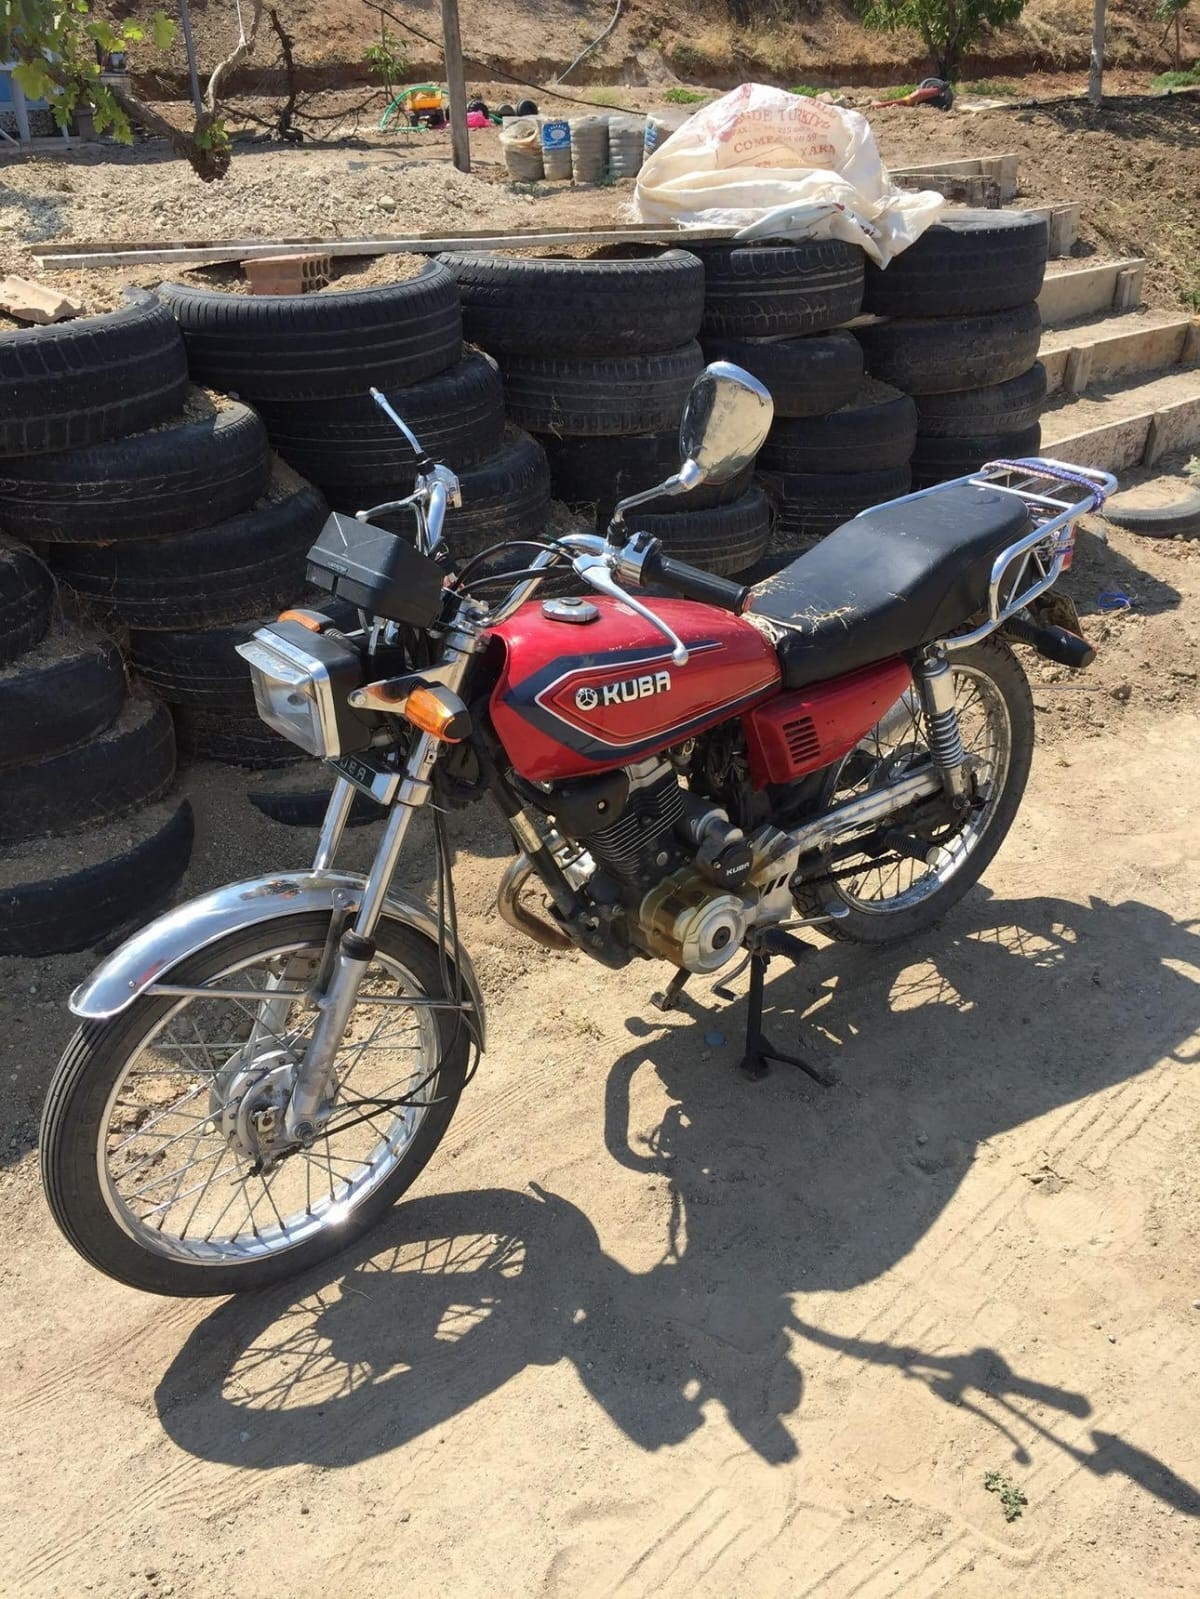 Elazığ’da hırsız park halindeki motosikleti çaldı
